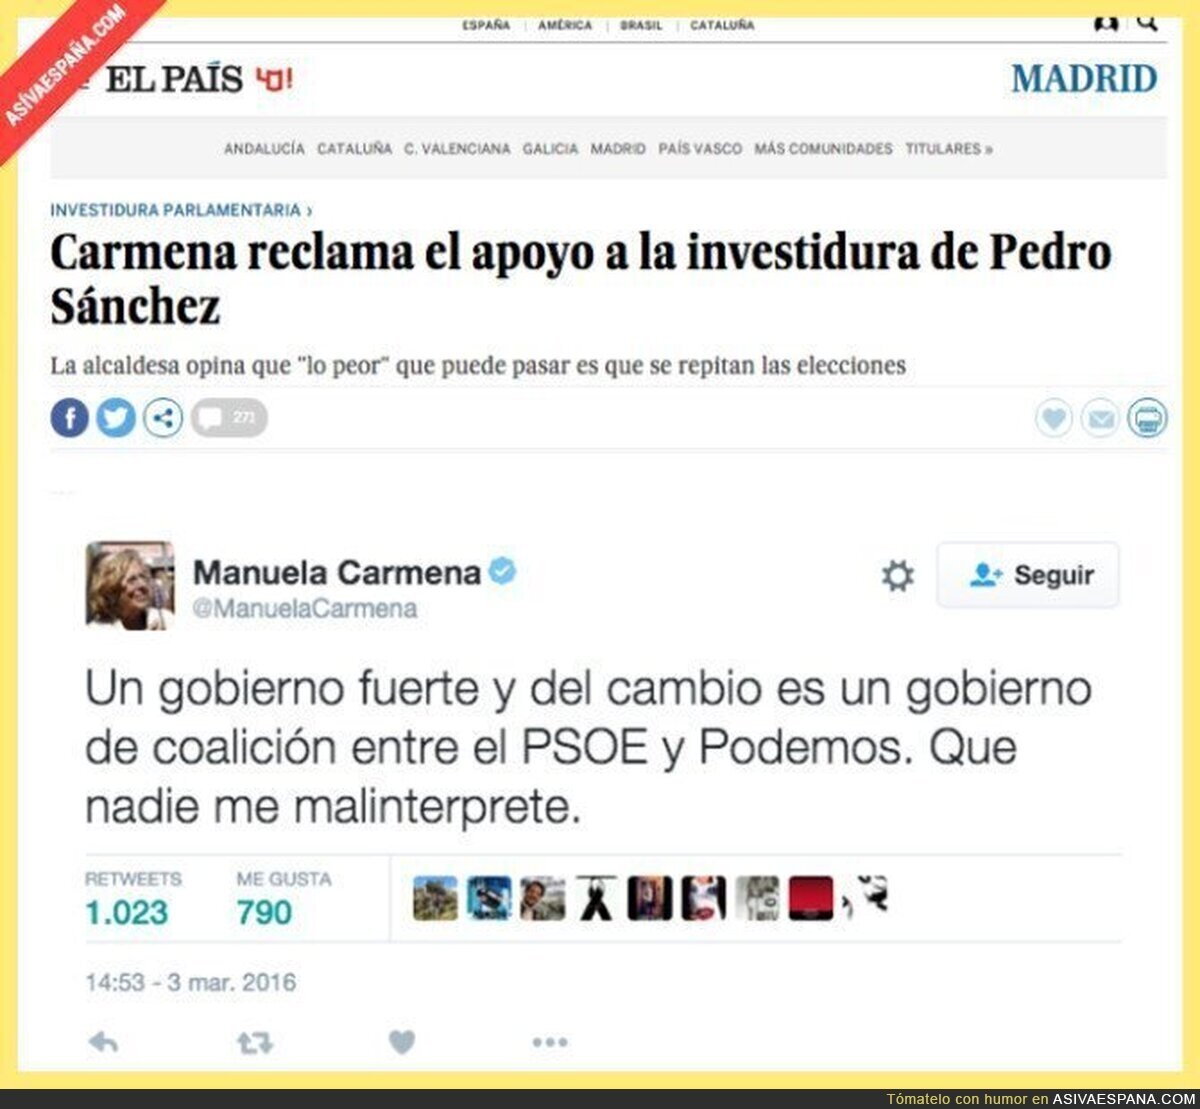 Manuela Carmena se retracta en sus propias palabras "malinterpretadas"